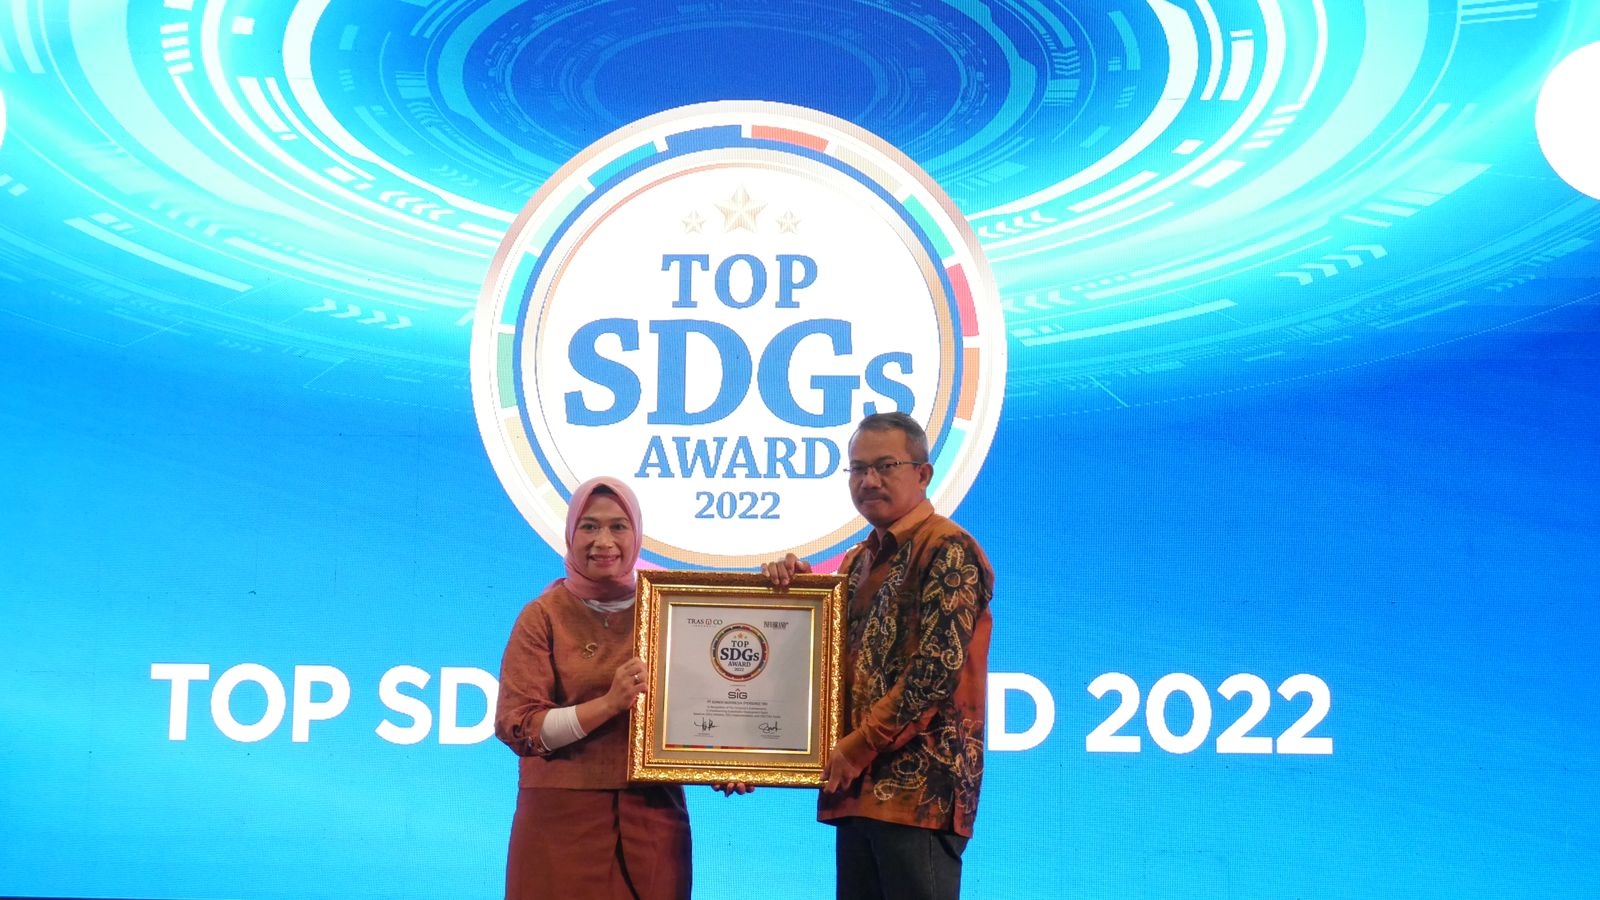 Komitmen Jalankan Konservasi Lingkungan, Semen Indonesia Raih Penghargaan TOP SDGs Award 2022